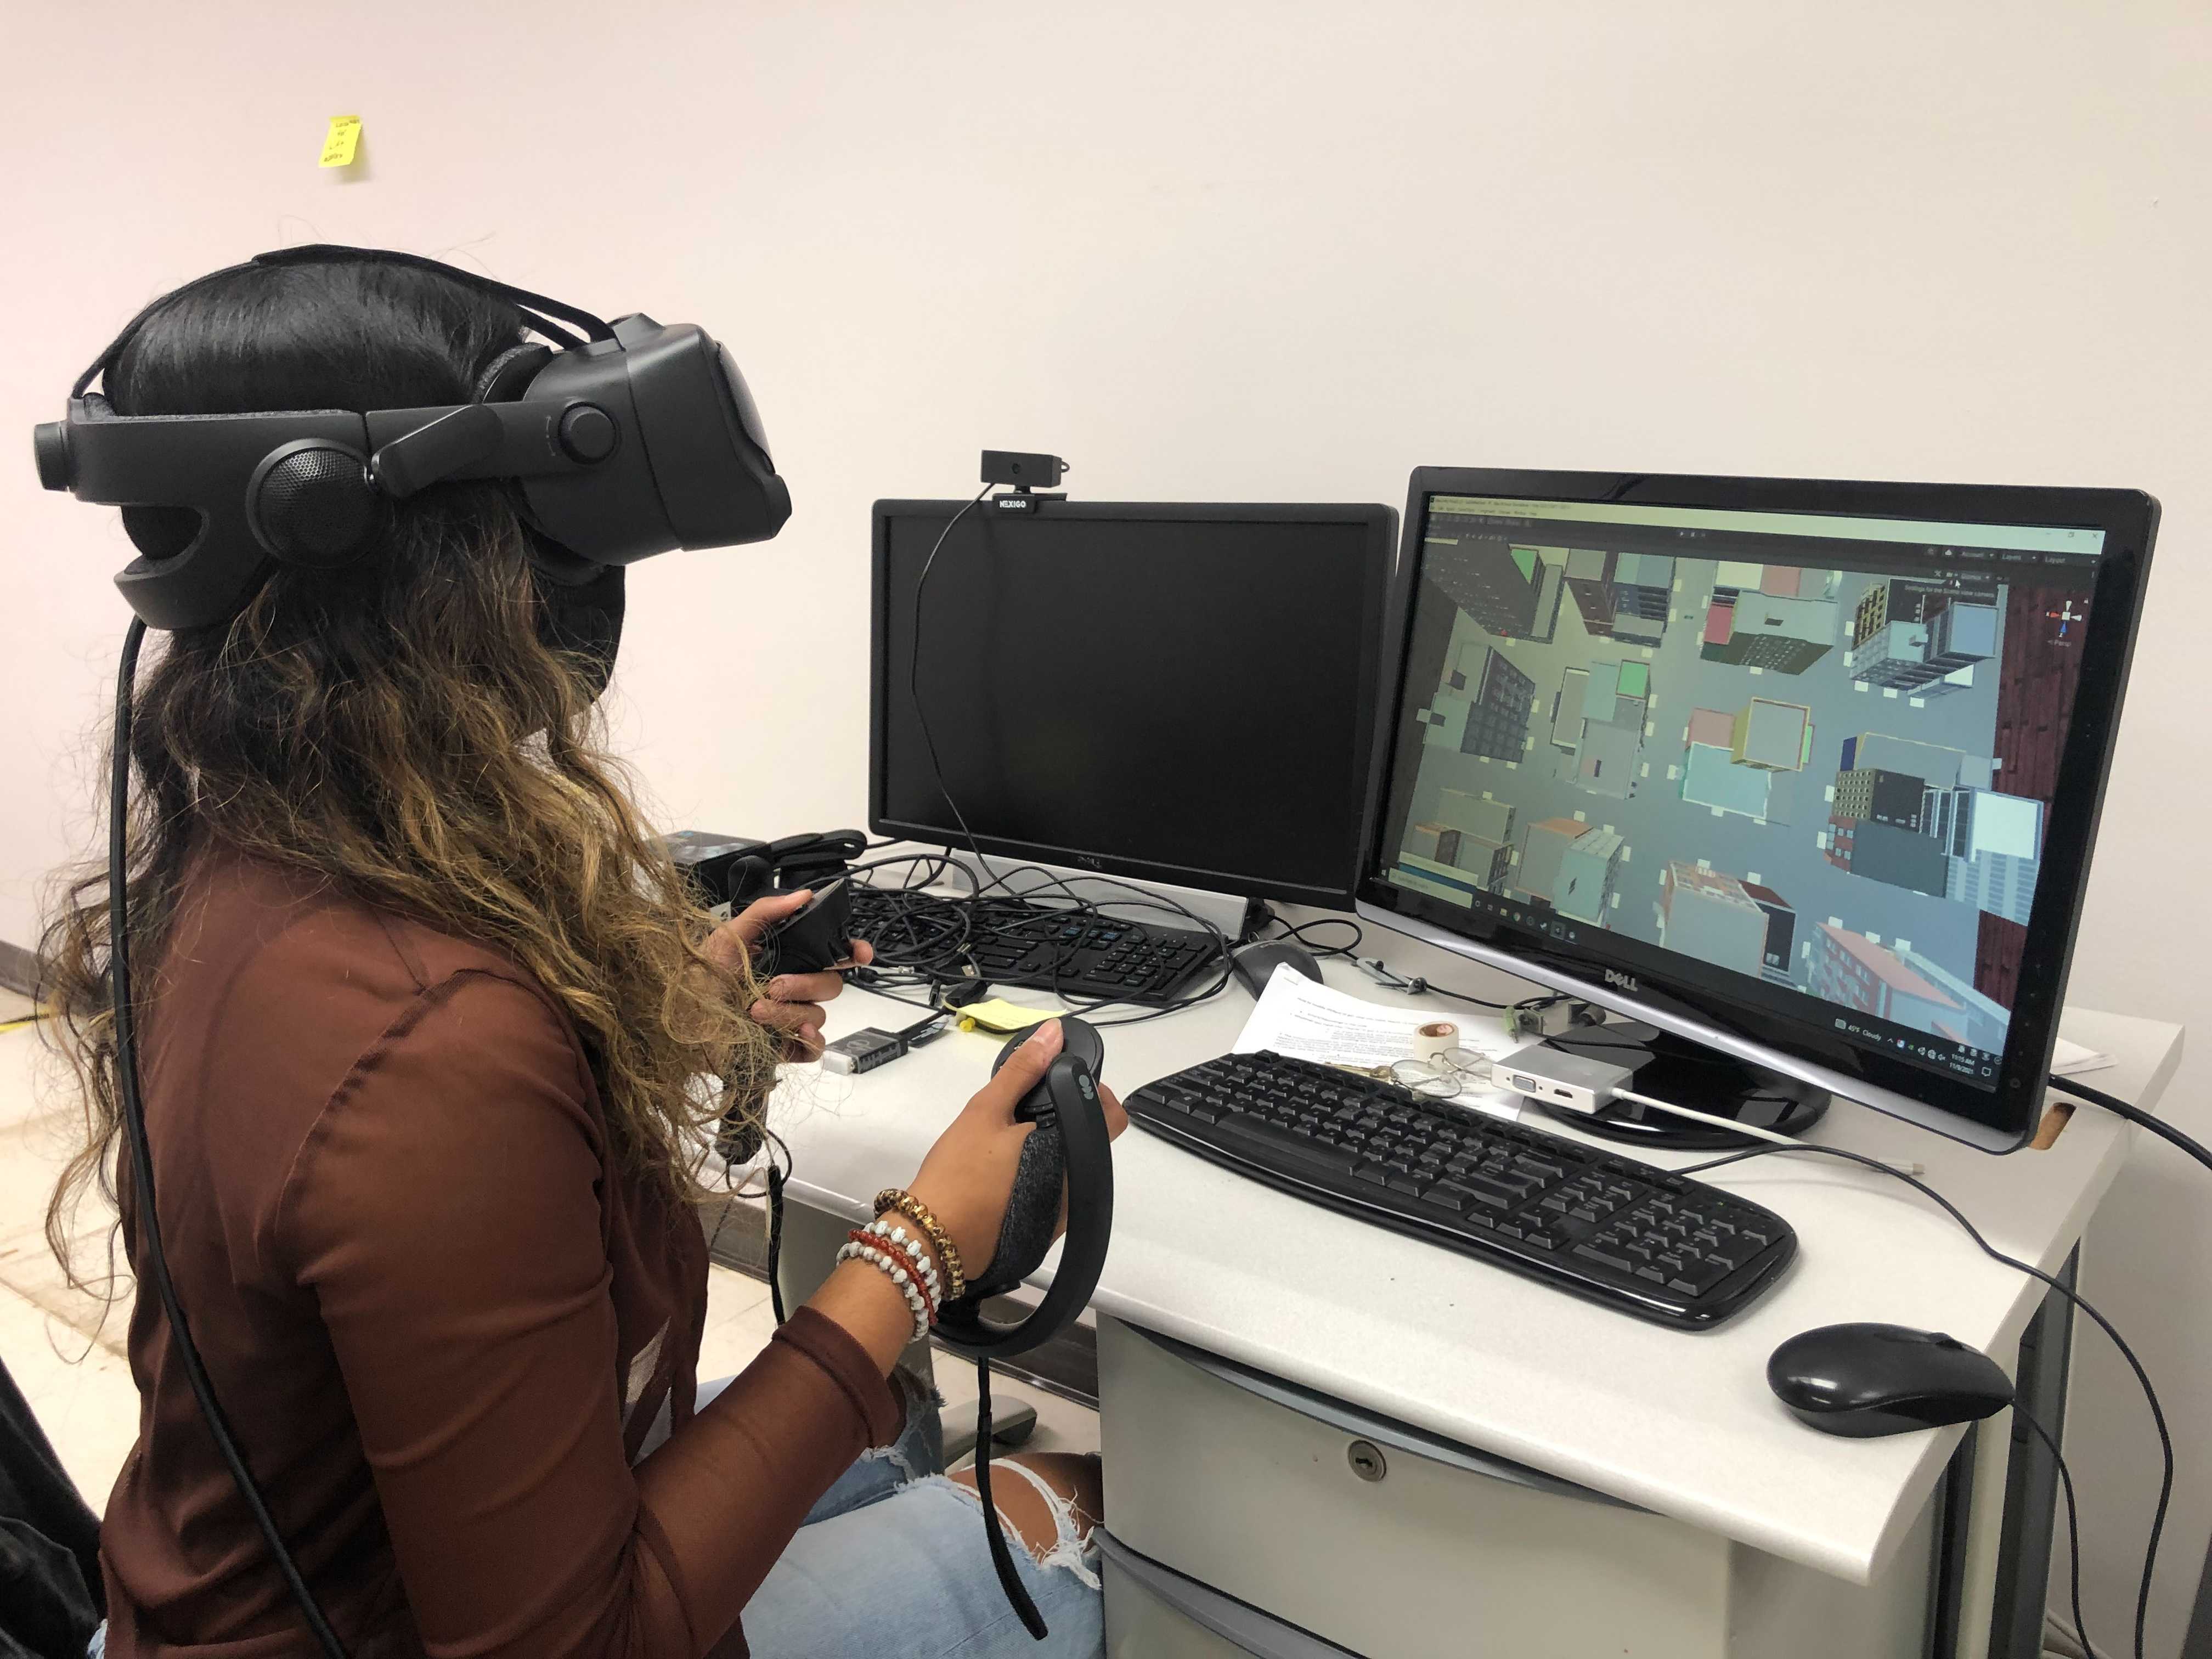 Anisha using VR equipment.